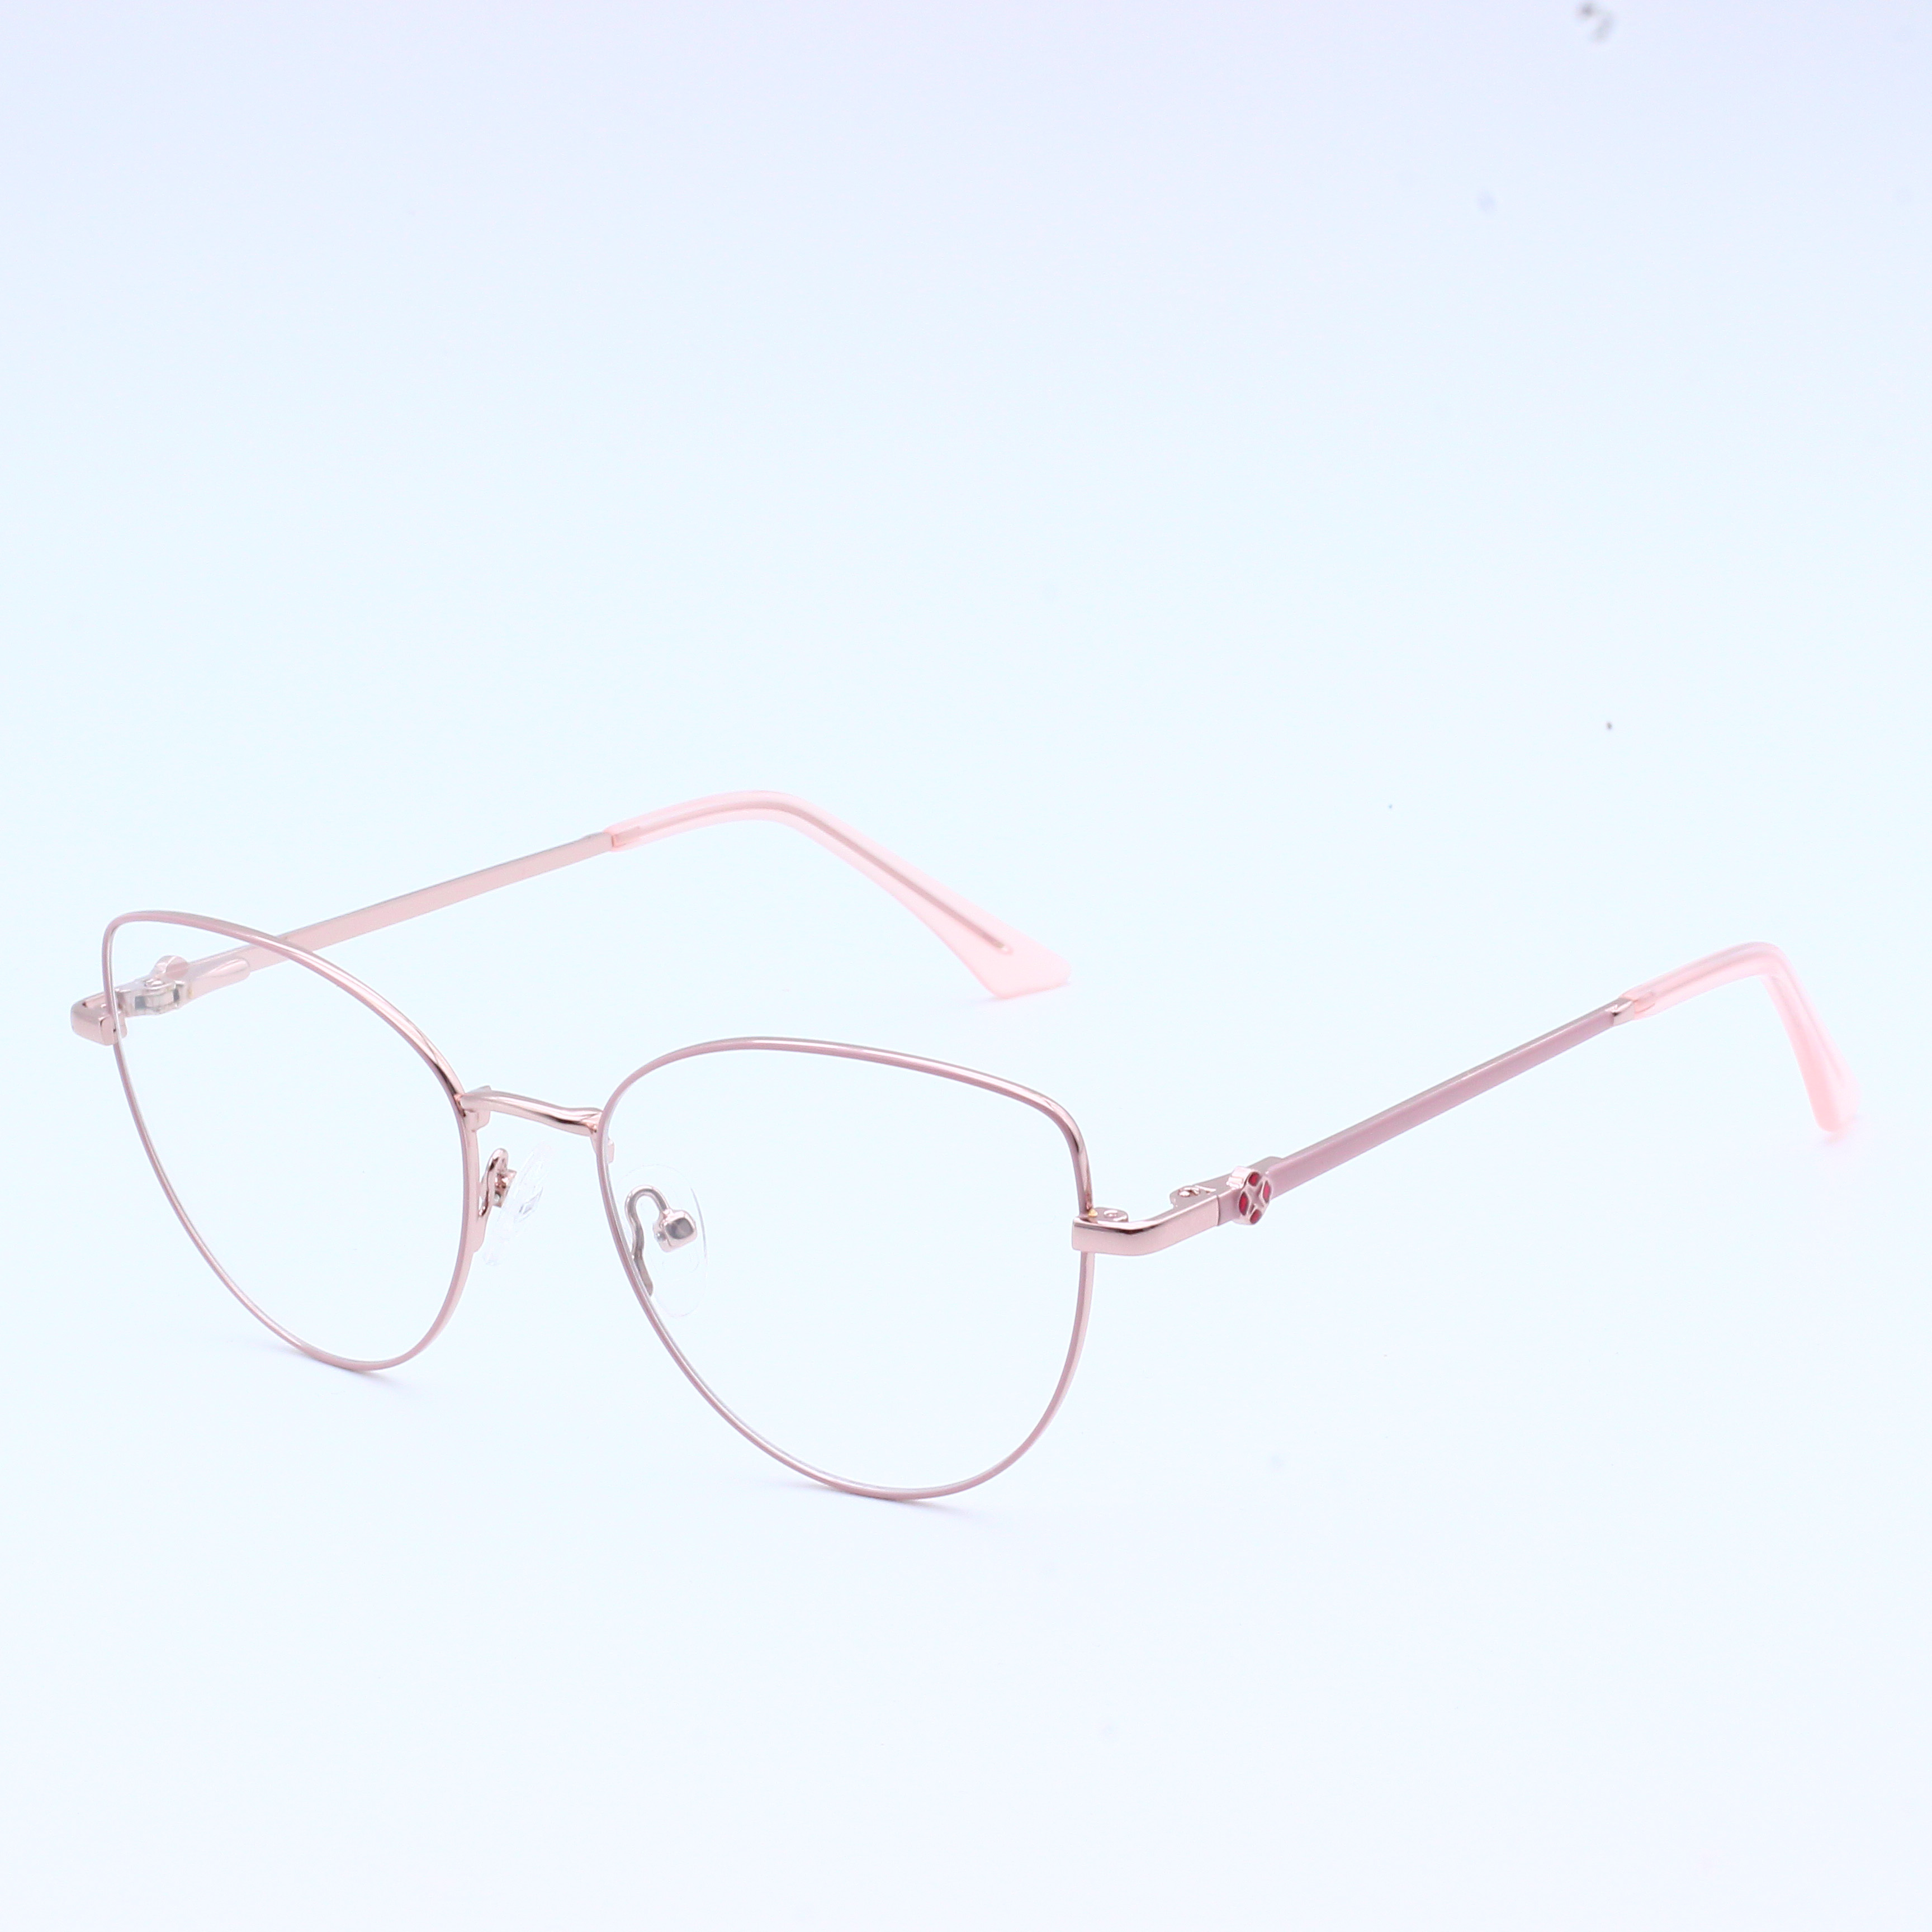 चश्मे का फ्रेम धातु का चश्मा कांच का फ्रेम (9)